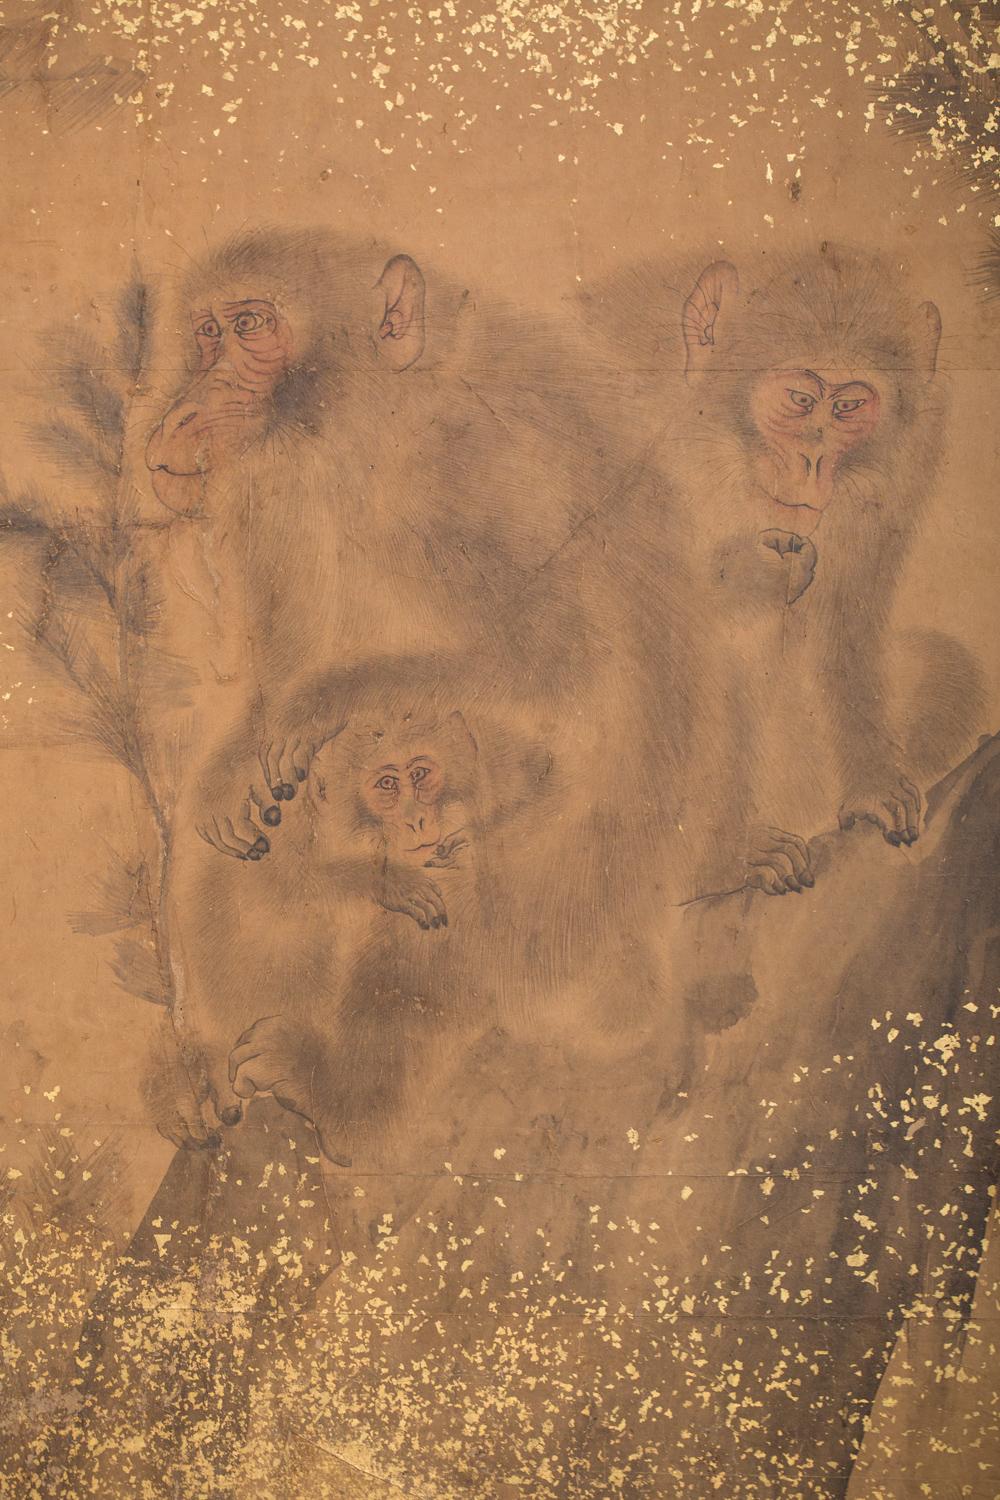 a troop of monkeys